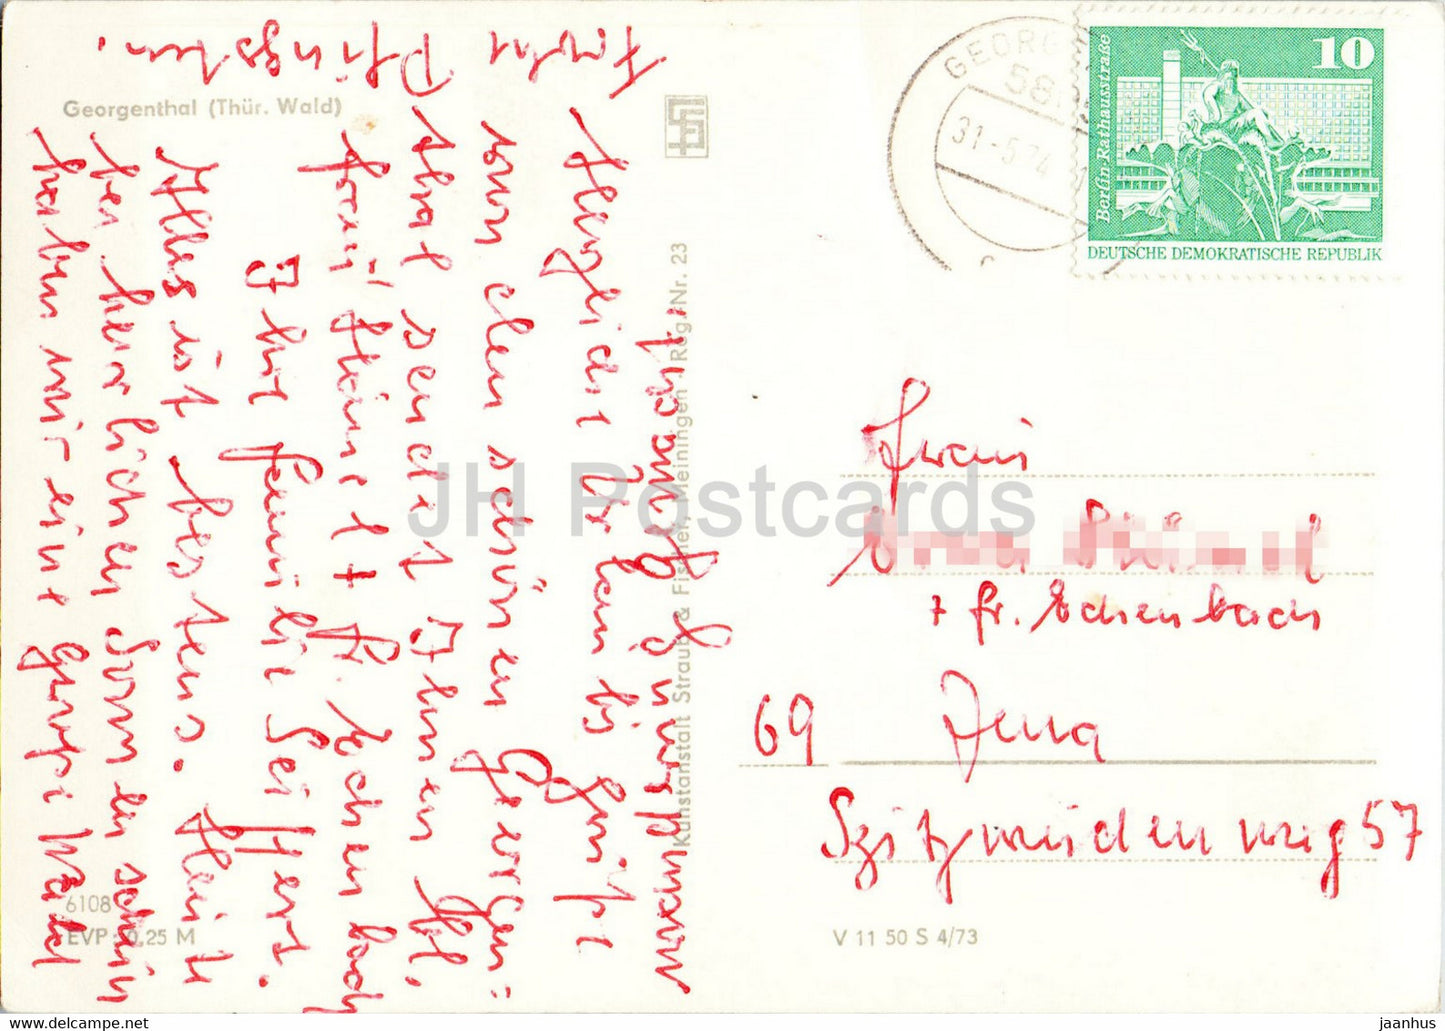 Georgenthal - Thur Wald - carte postale ancienne - 1974 - Allemagne DDR - utilisé